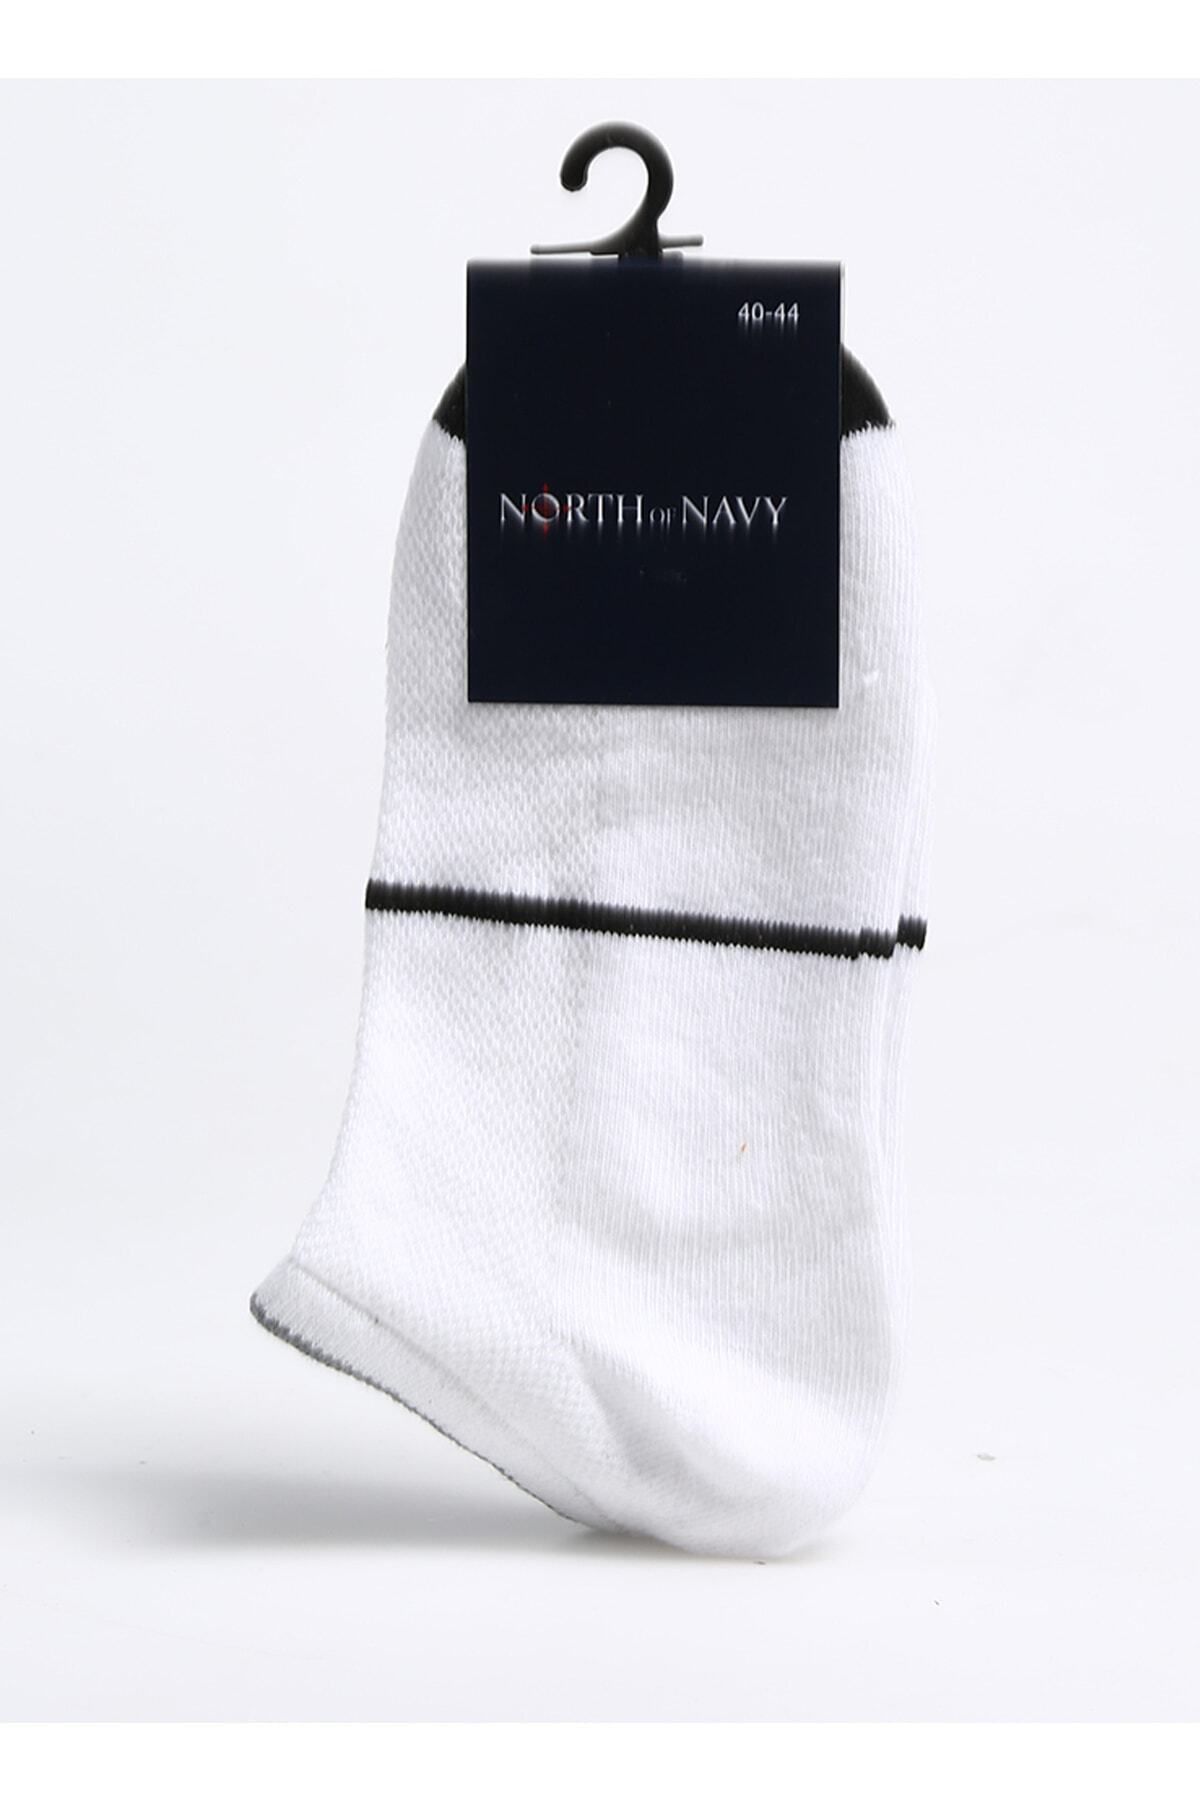 North of Navy Beyaz Erkek Patik Çorap